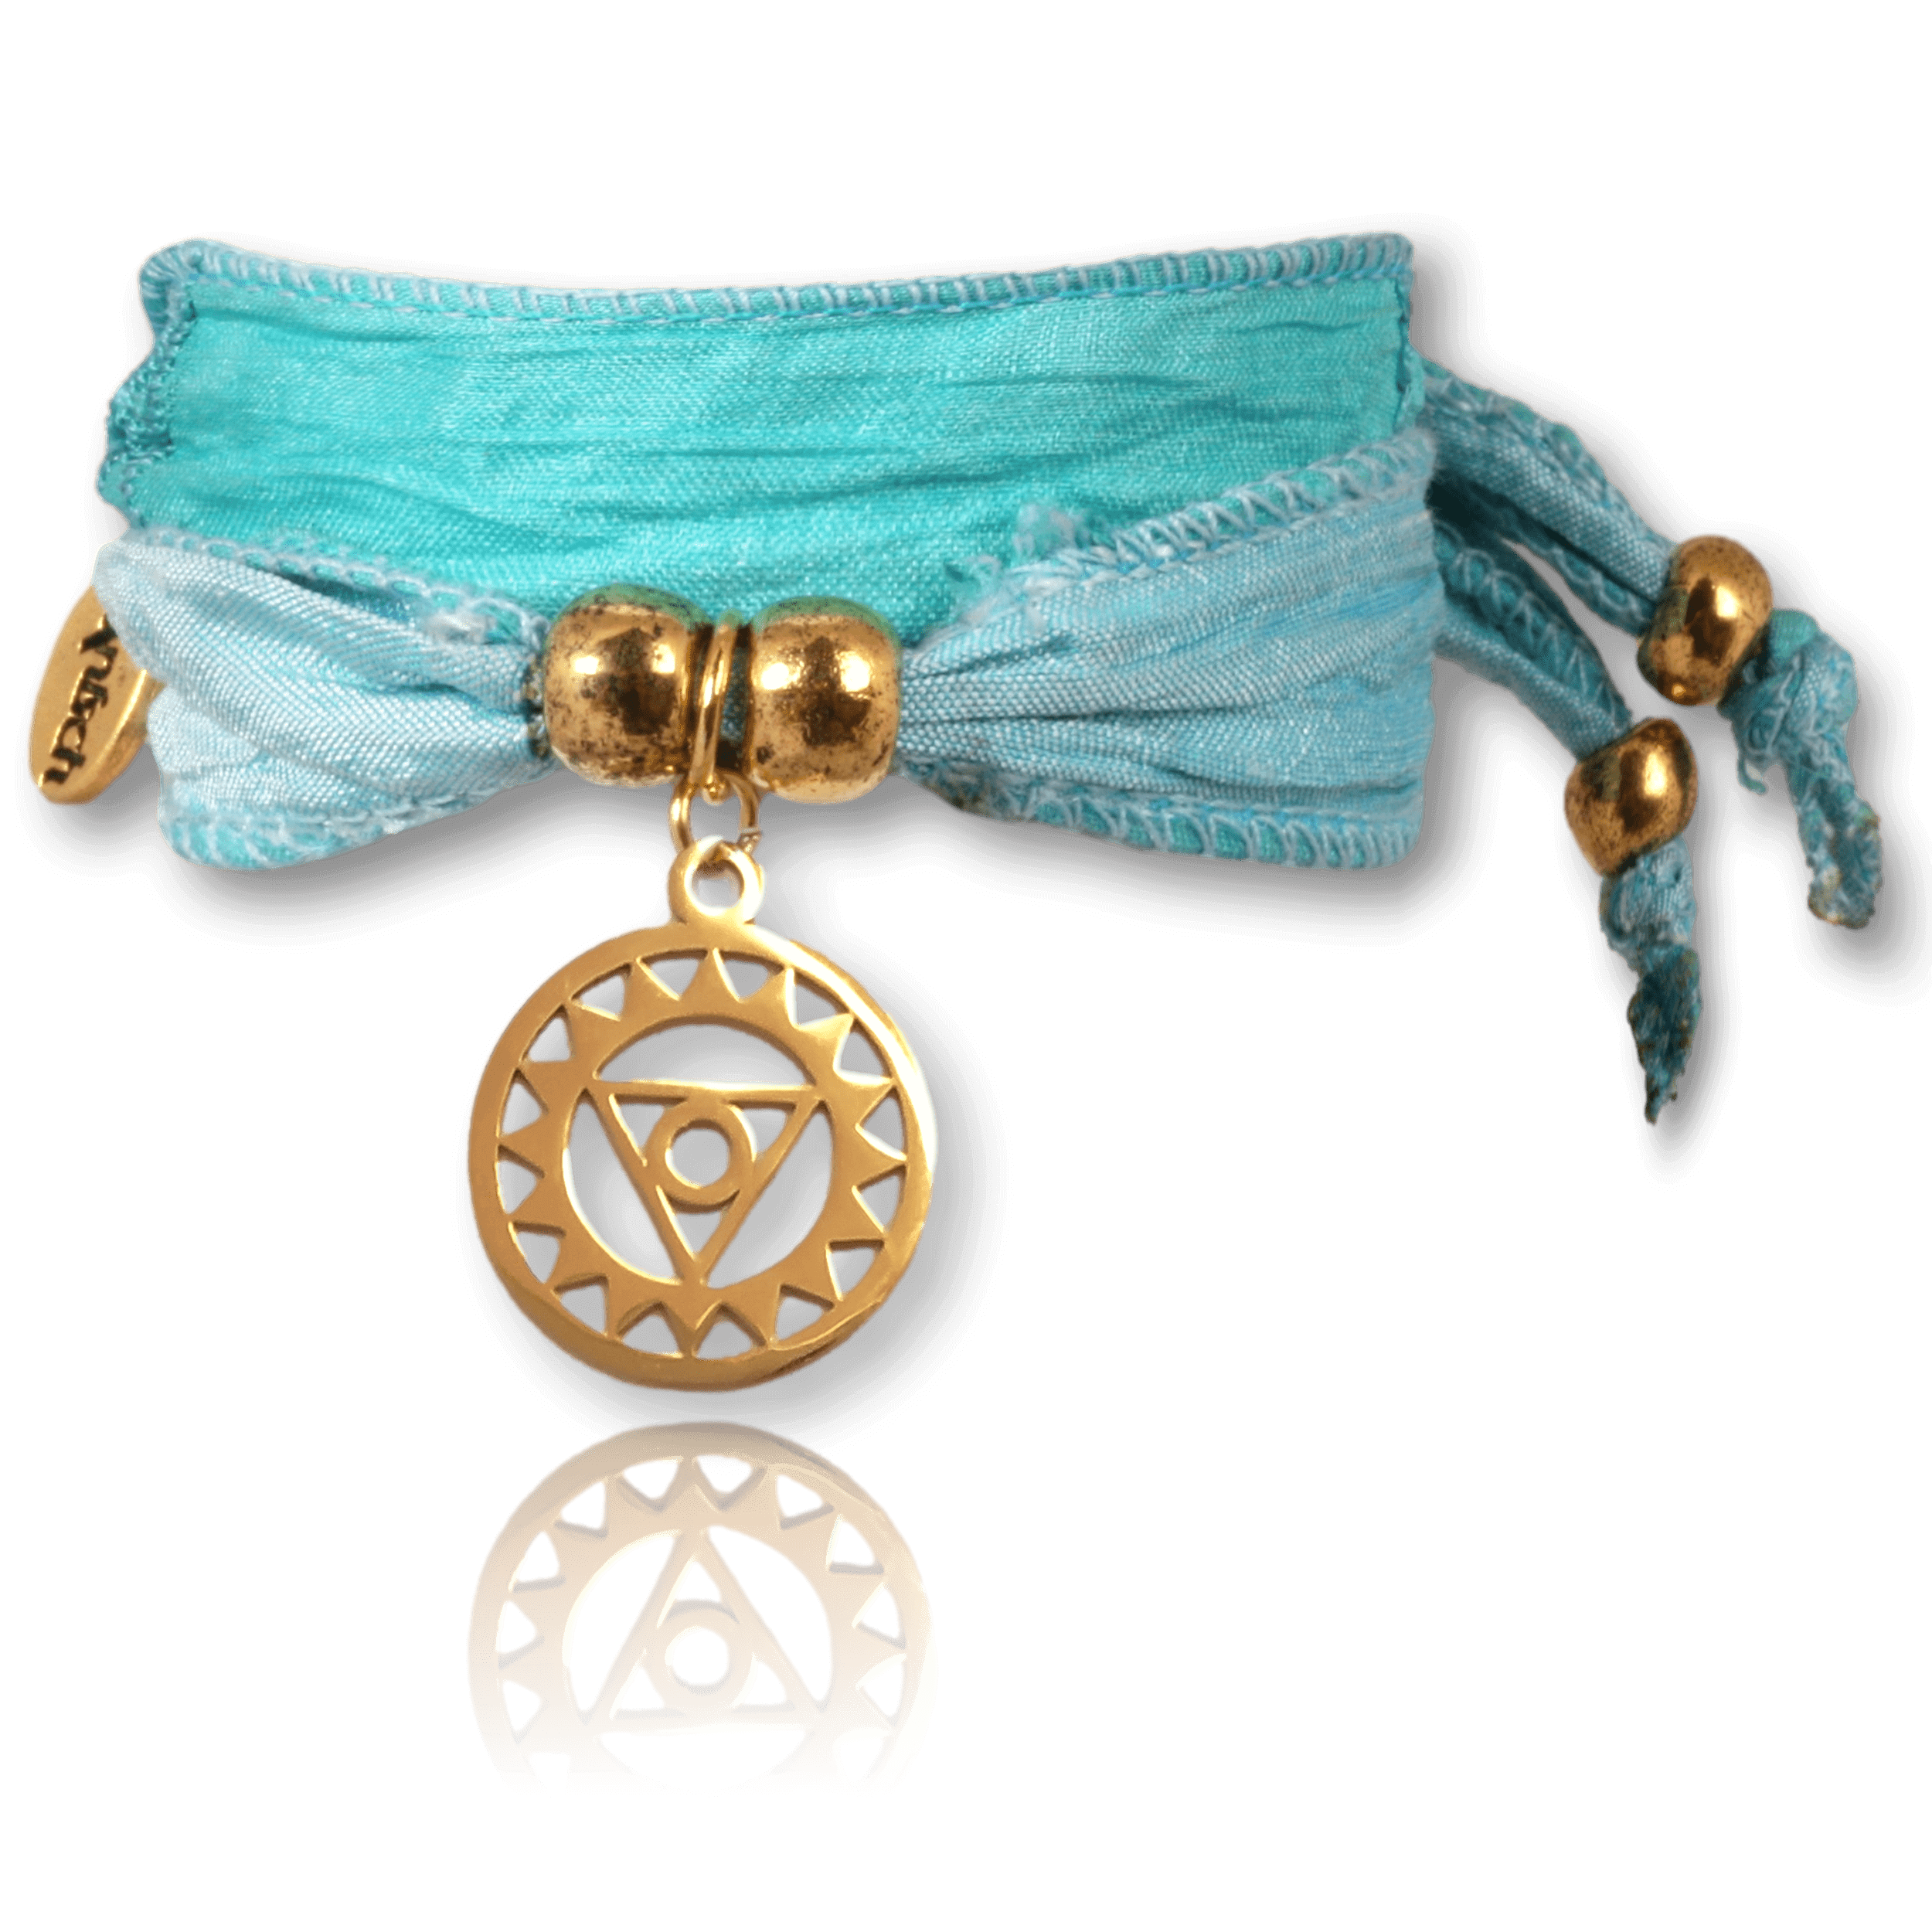 Vishudda vergoldet – Halschakra Armband für Wahrheit & Authentizität